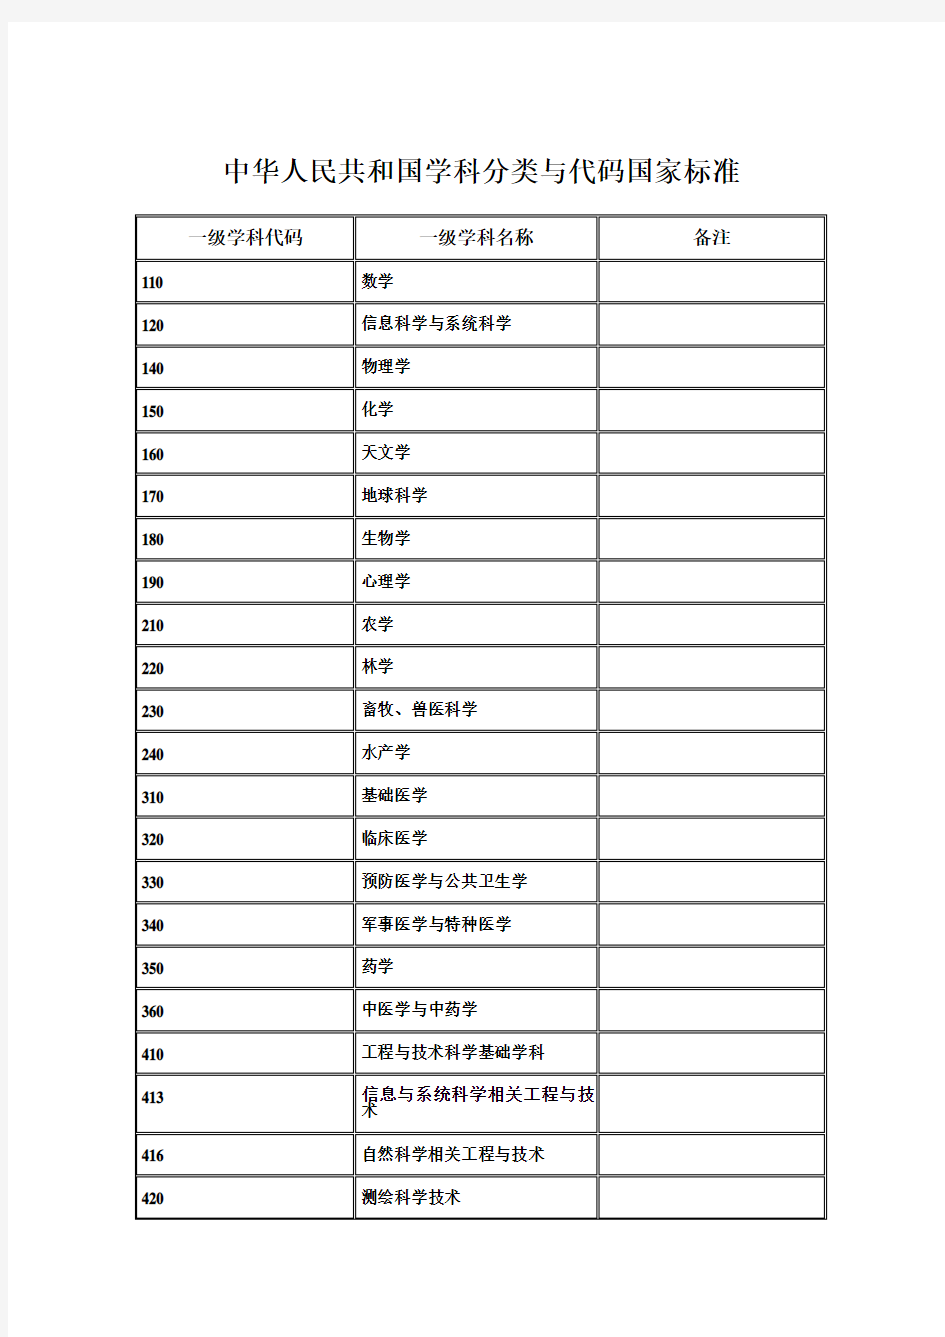 中华人民共和国学科分类与代码国家标准GBT13742009人文社科类